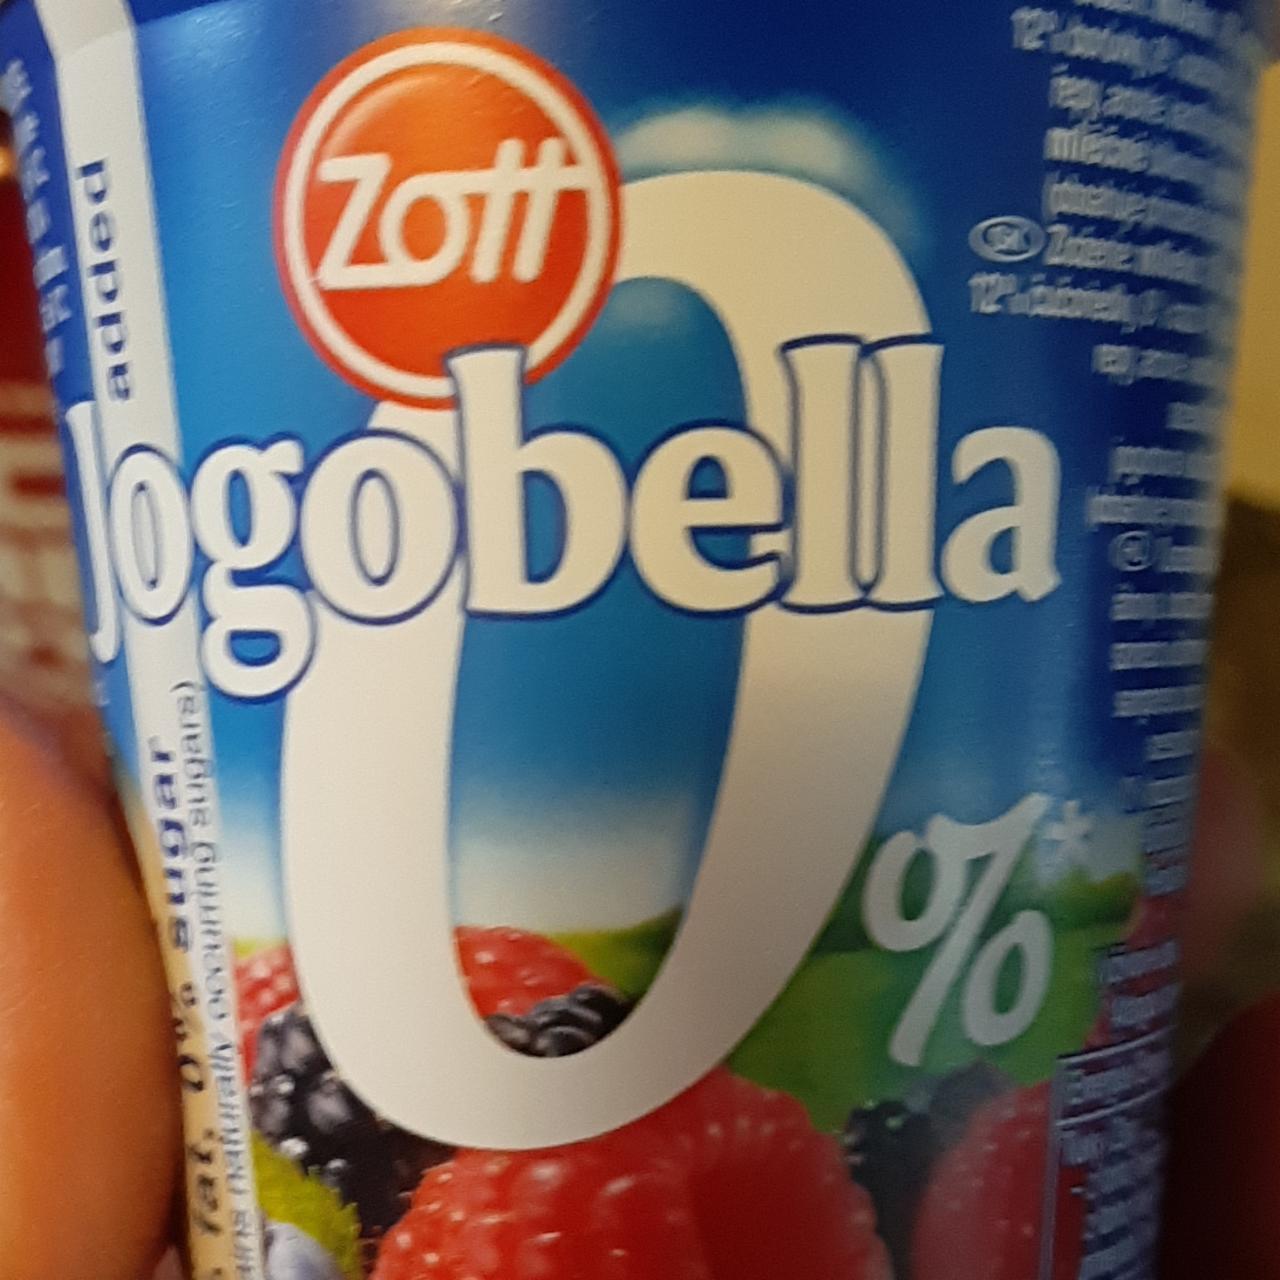 Képek - Jogobella 0% sugar erdei gyümölcsös Zott